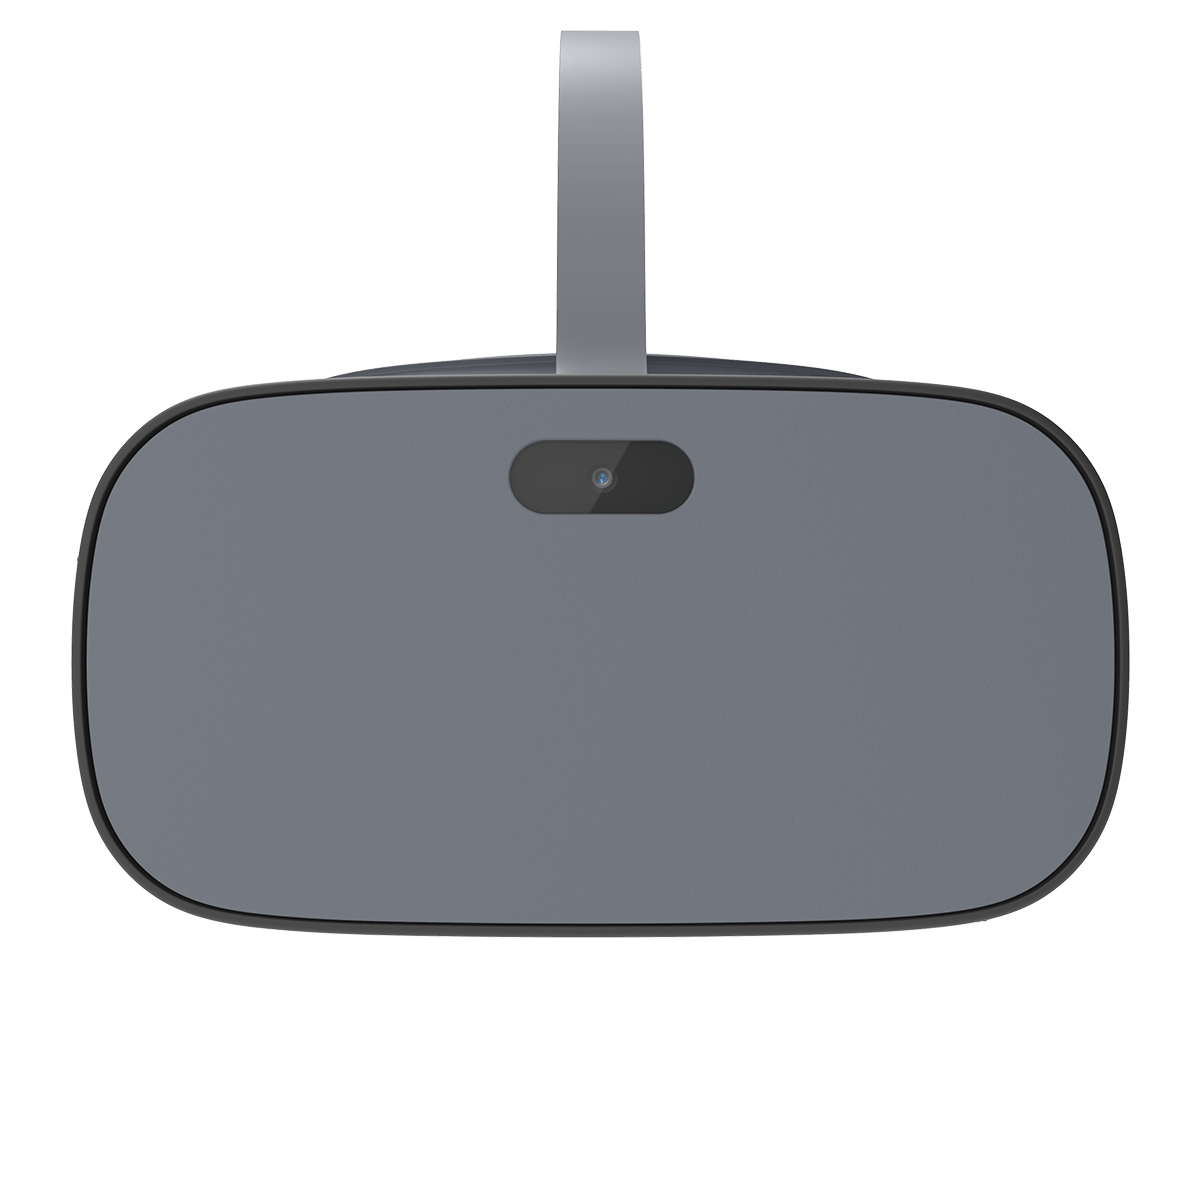 Pico G2 4K Enterprise Virtual Reality Headset